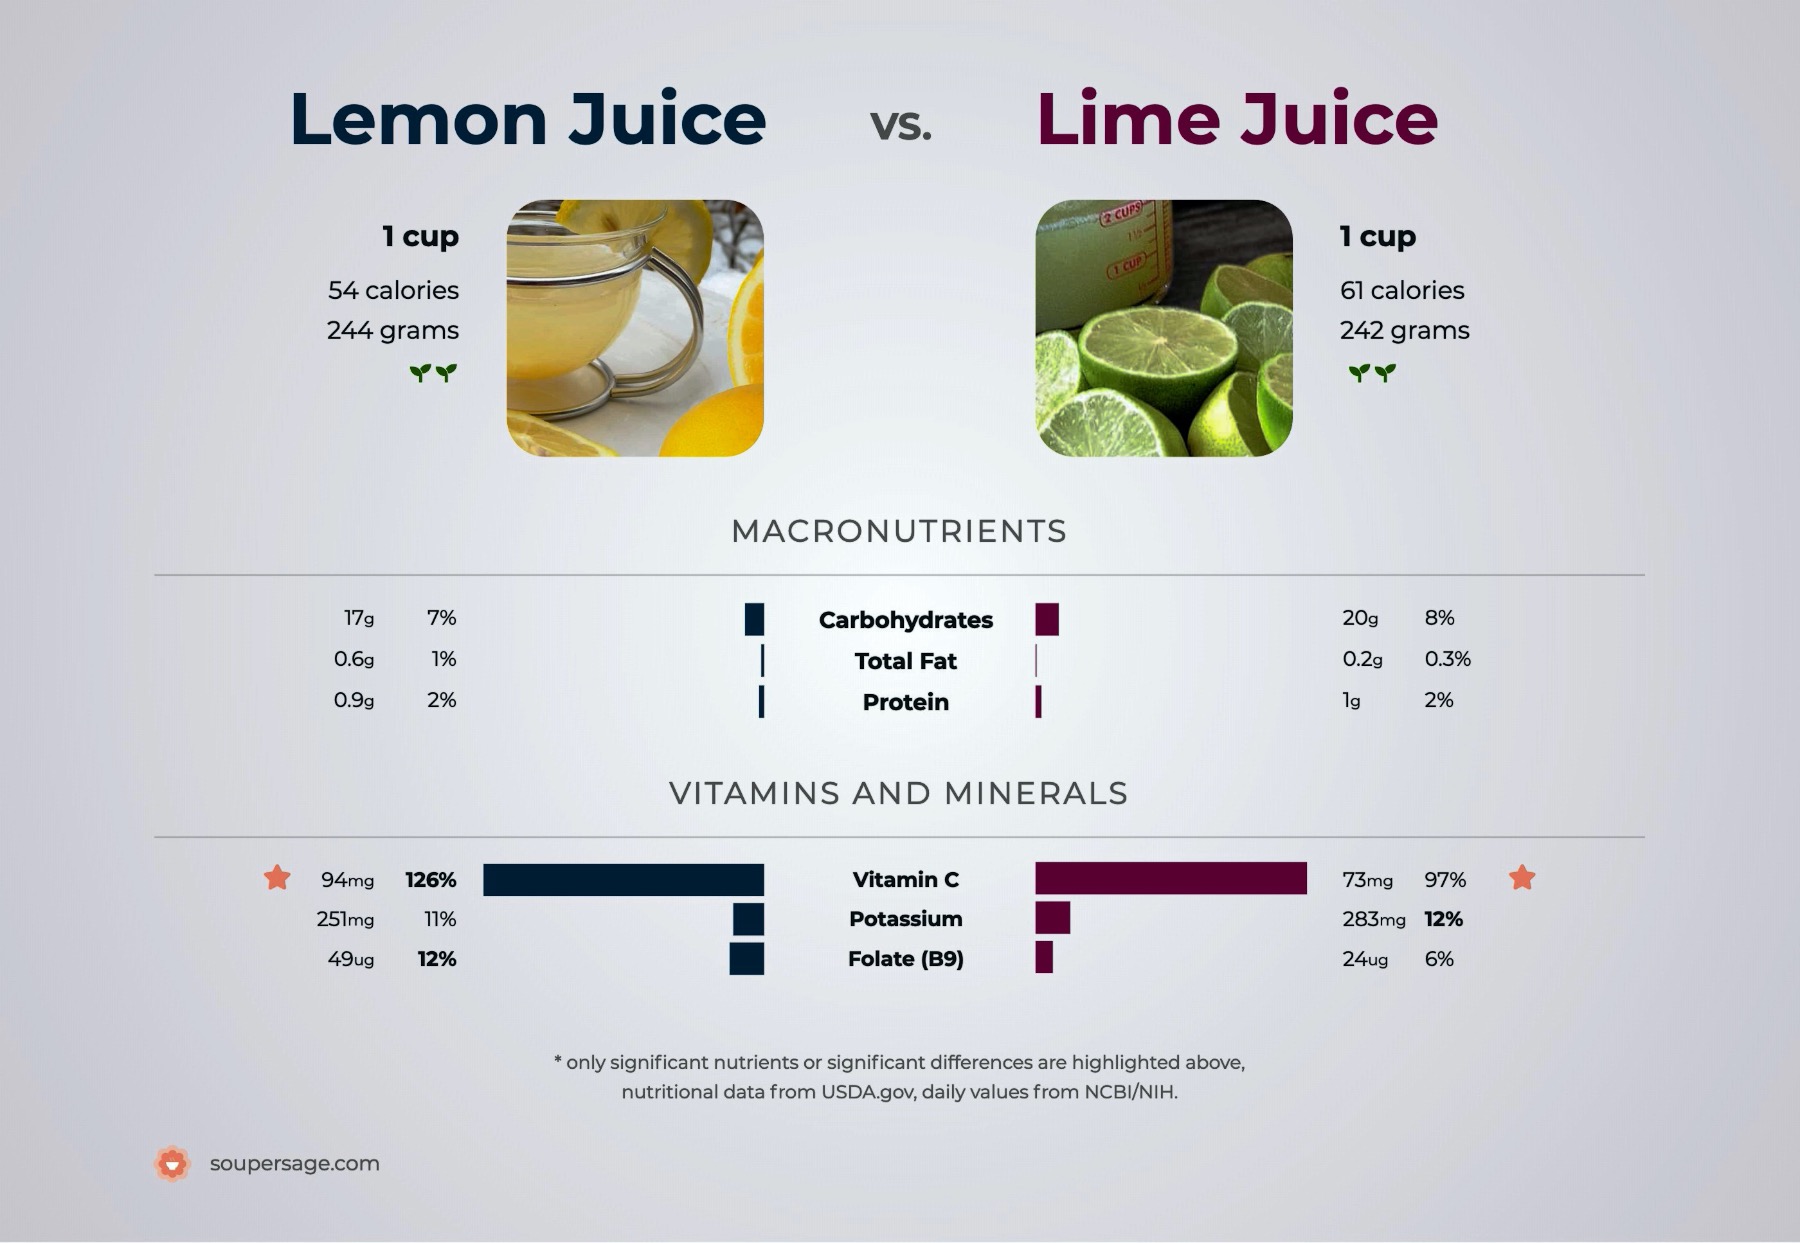 nutrition comparison of lemon juice vs. lime juice